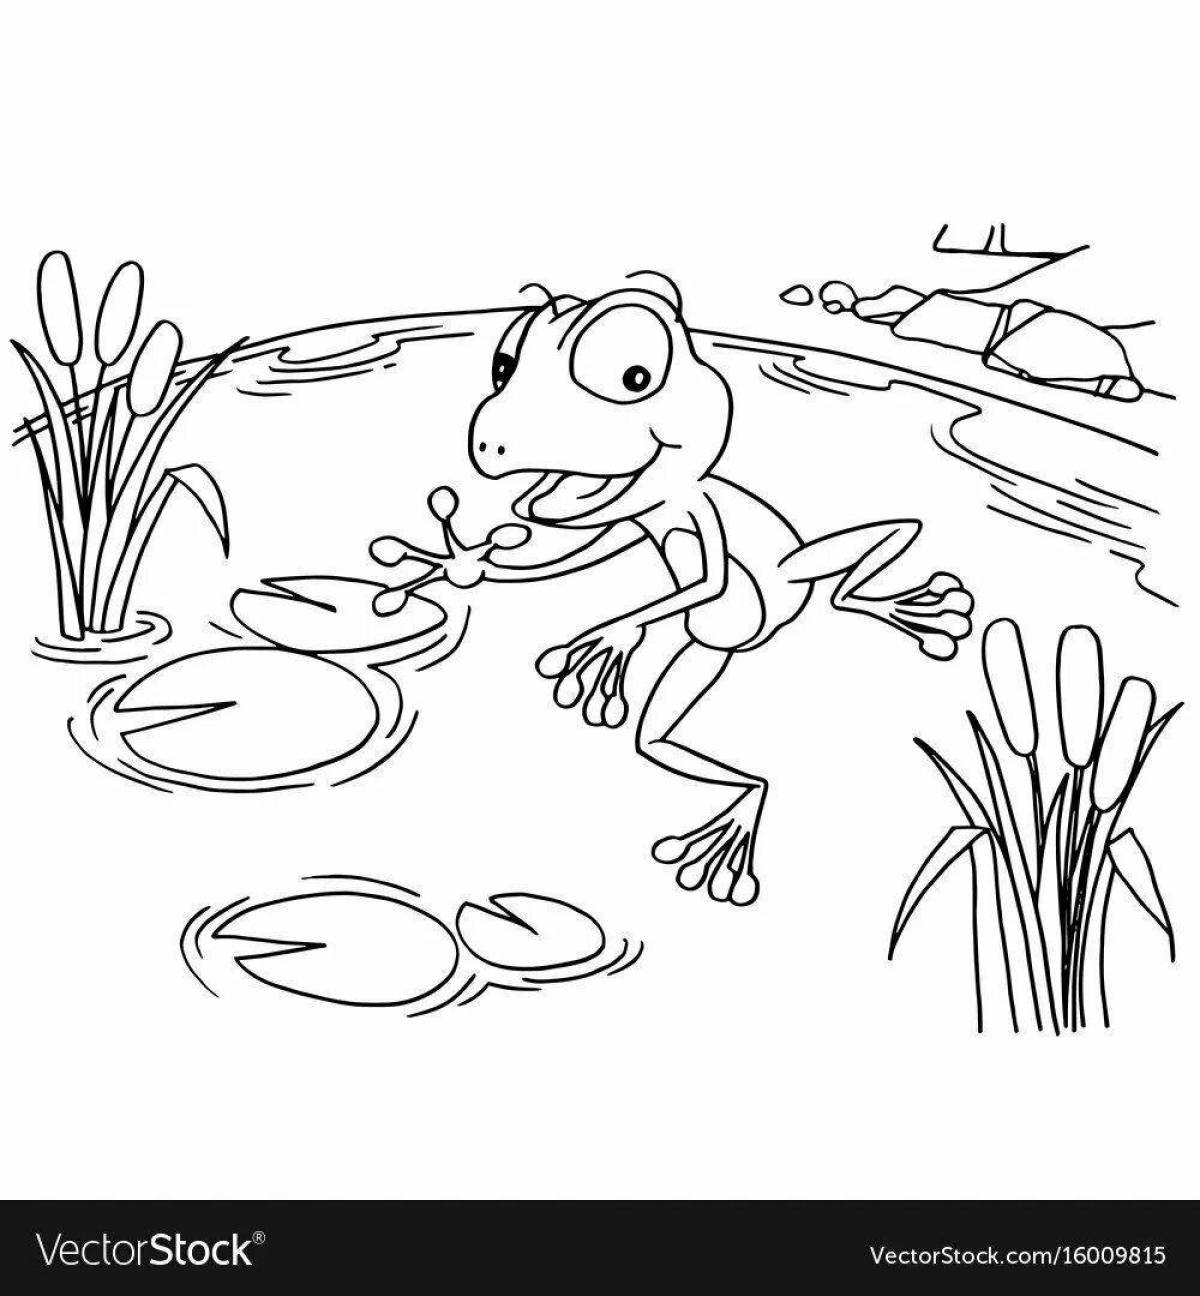 Rampant traveler frog coloring page